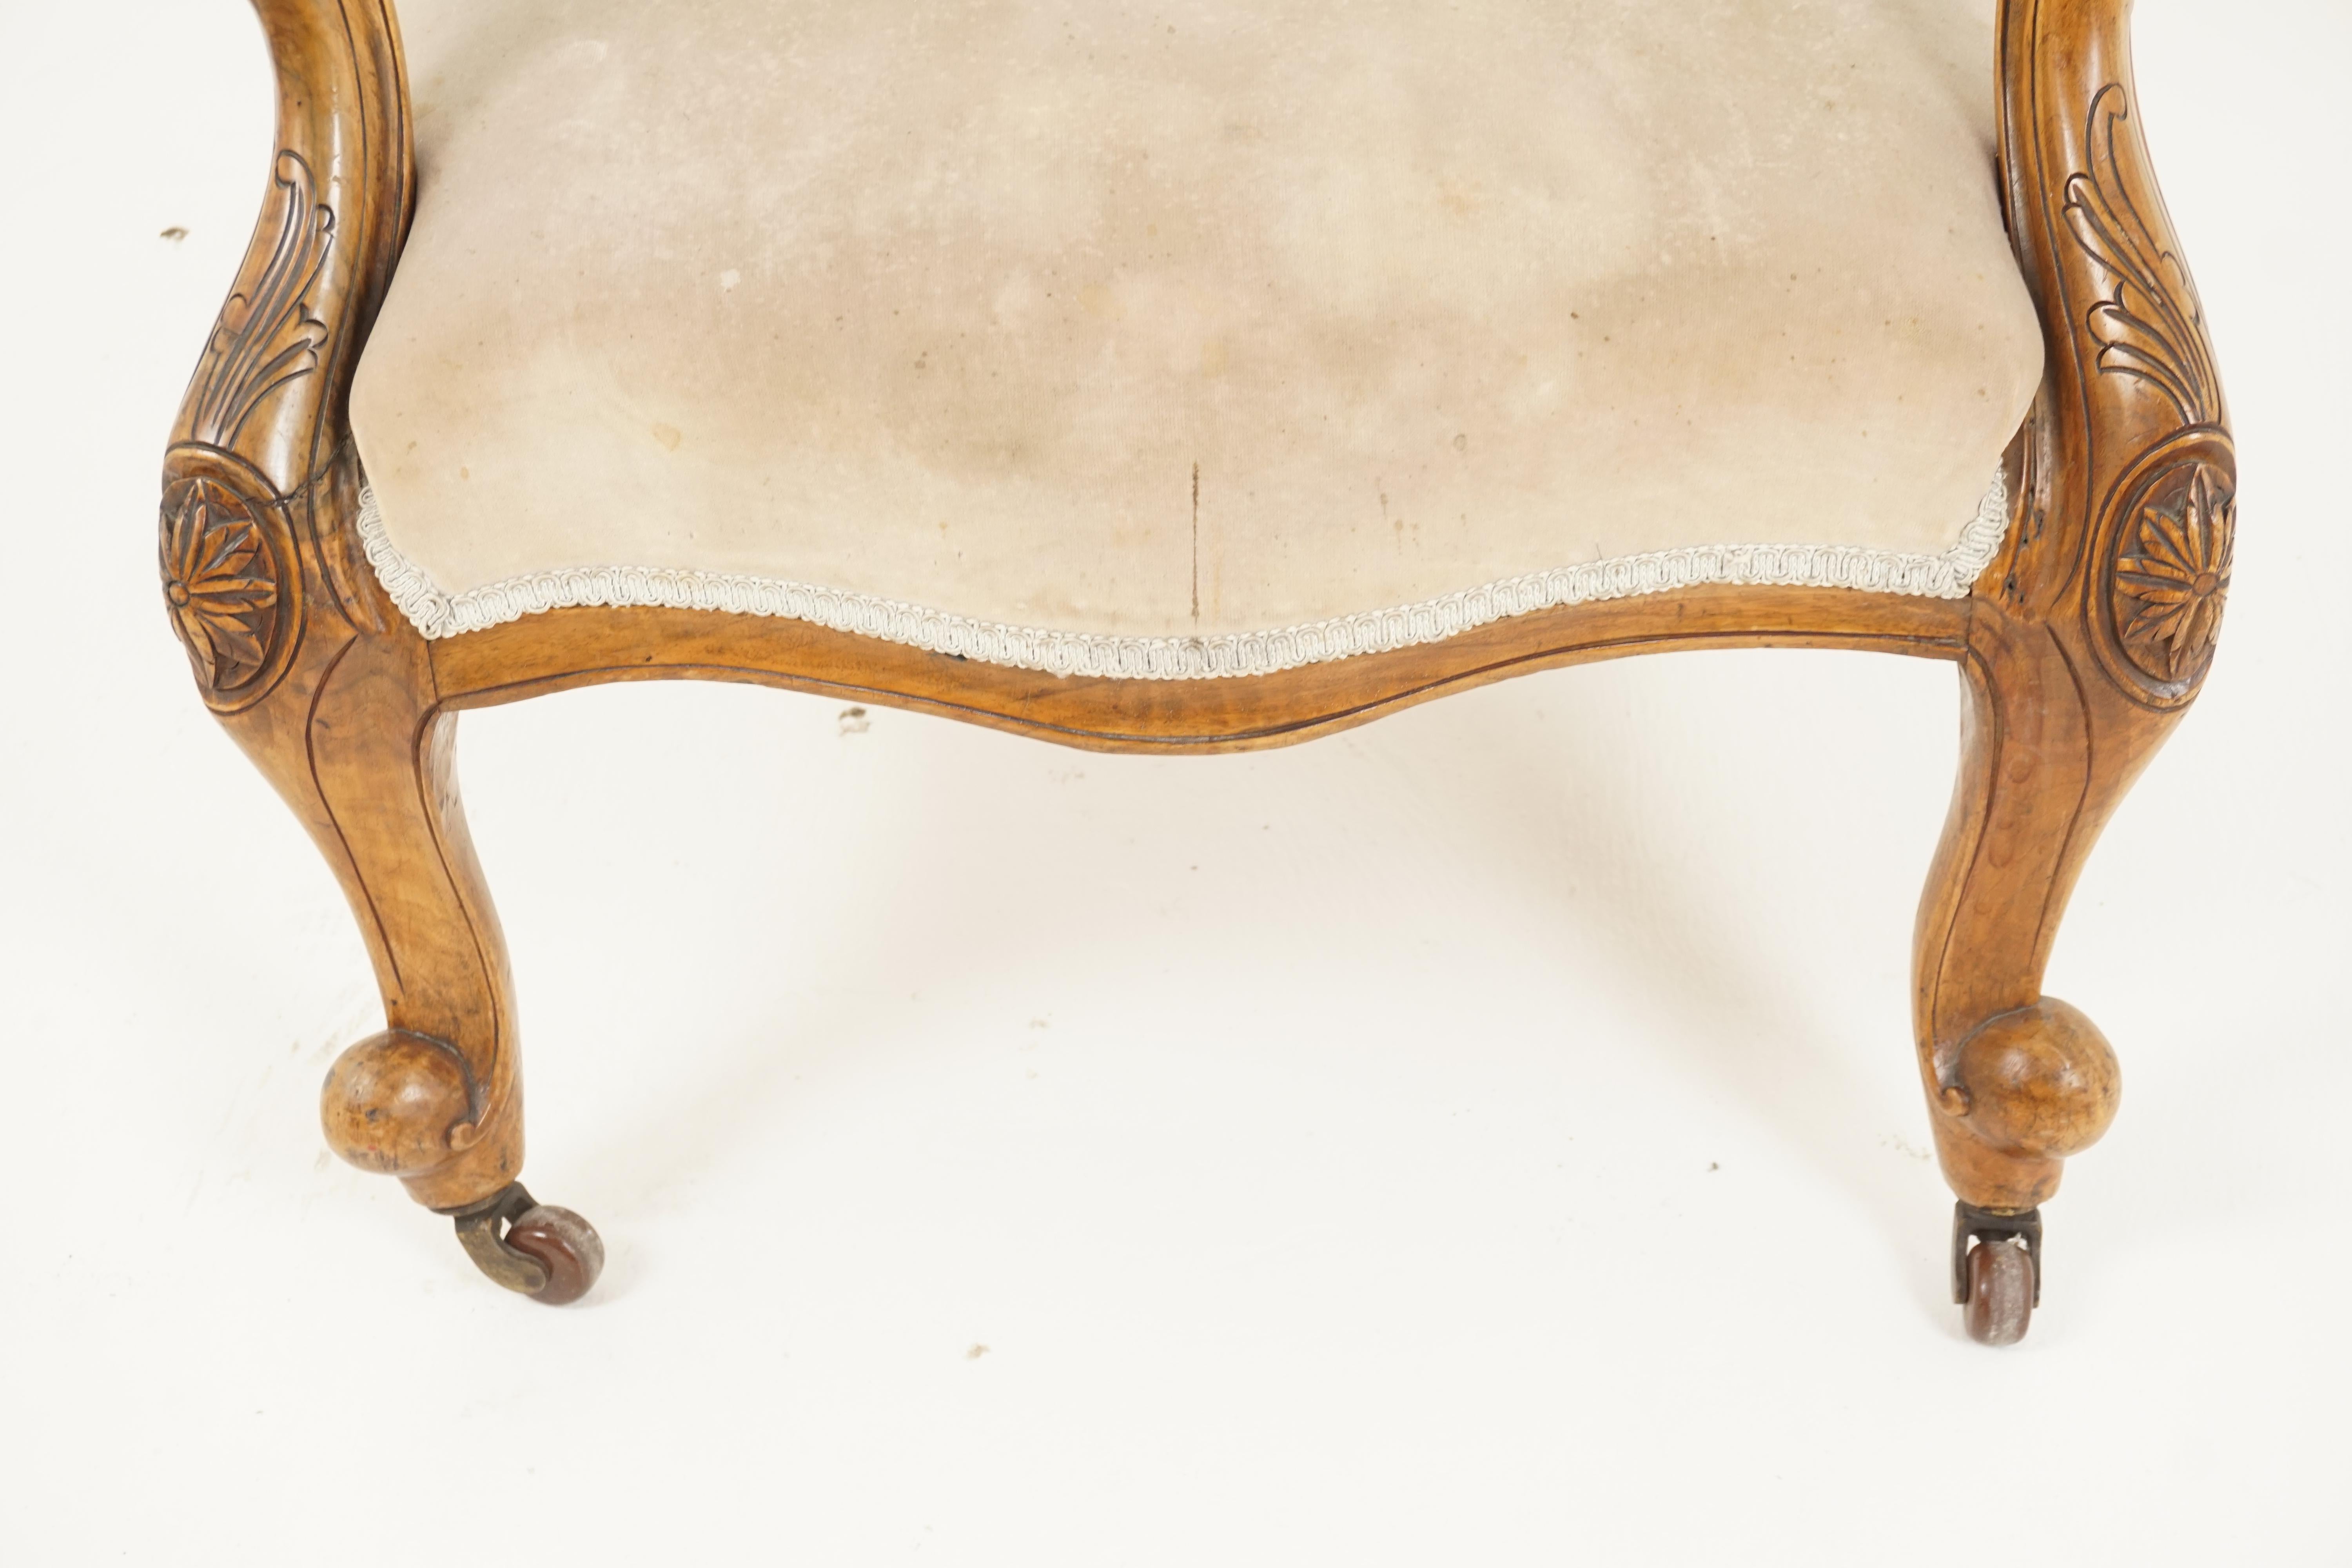 Scottish Antique Victorian Chair, Walnut, Gentlemen's Parlour Chair, Scotland 1870, H282